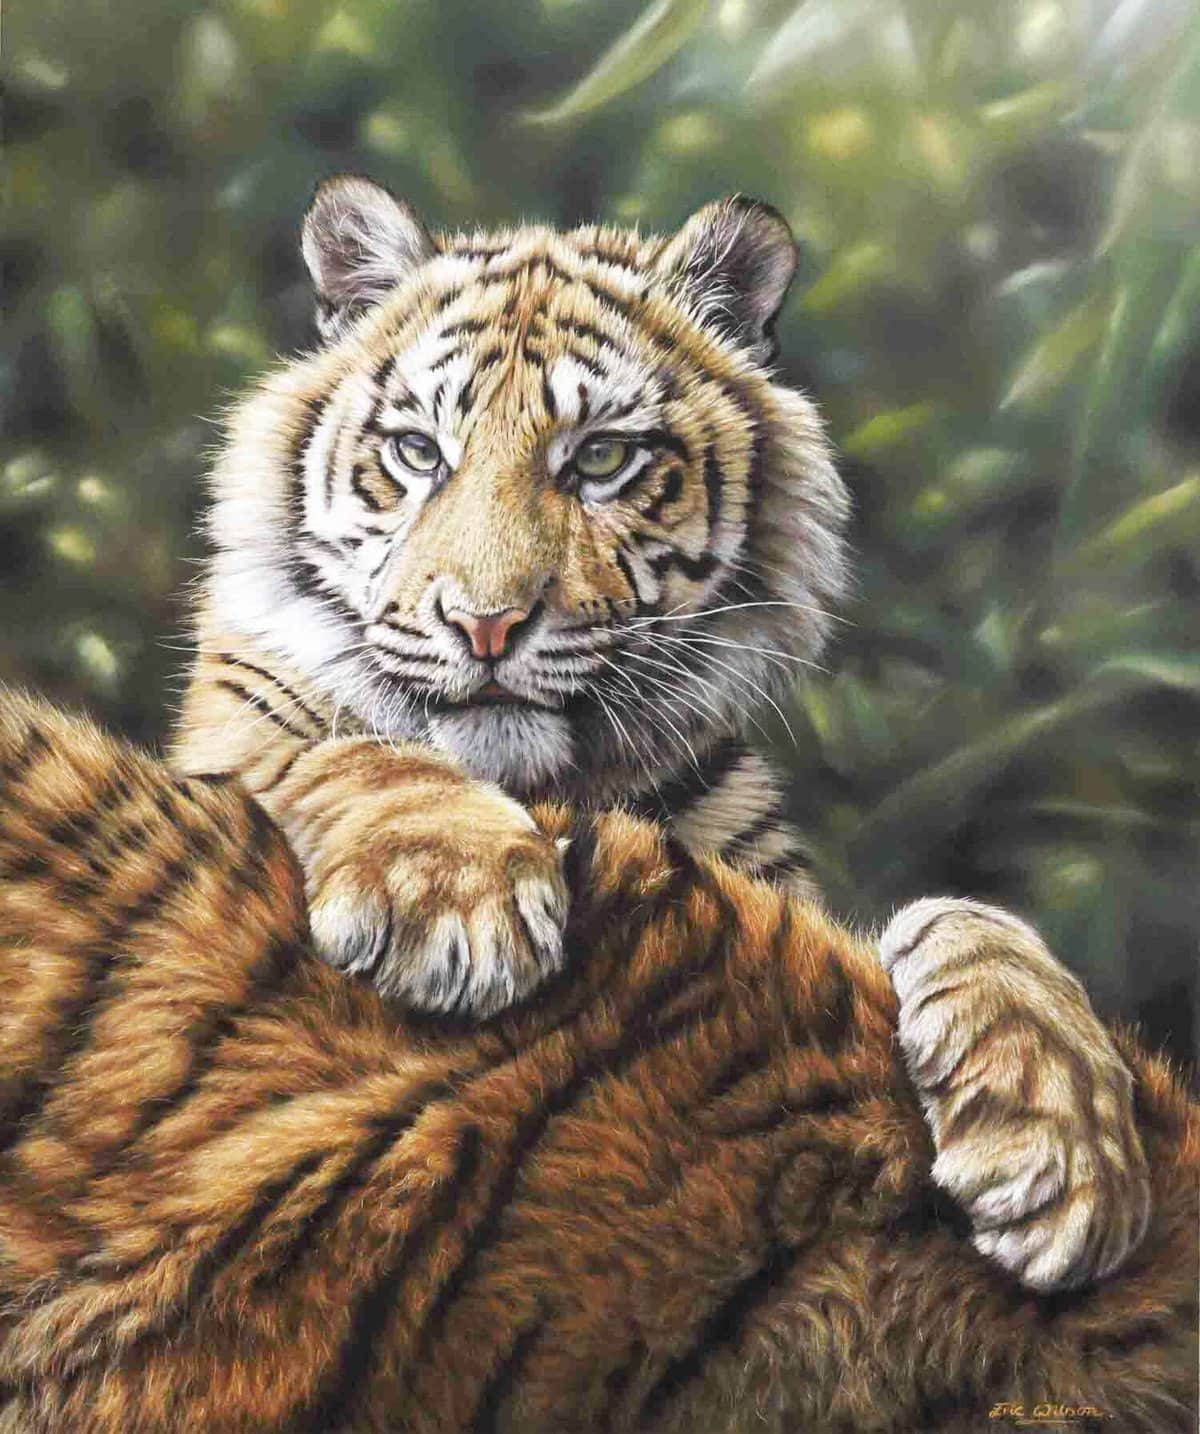 diamanten-wizard-diamond-painting-kits-Animals-Tiger-Tiger Mother and Cub-original.jpeg